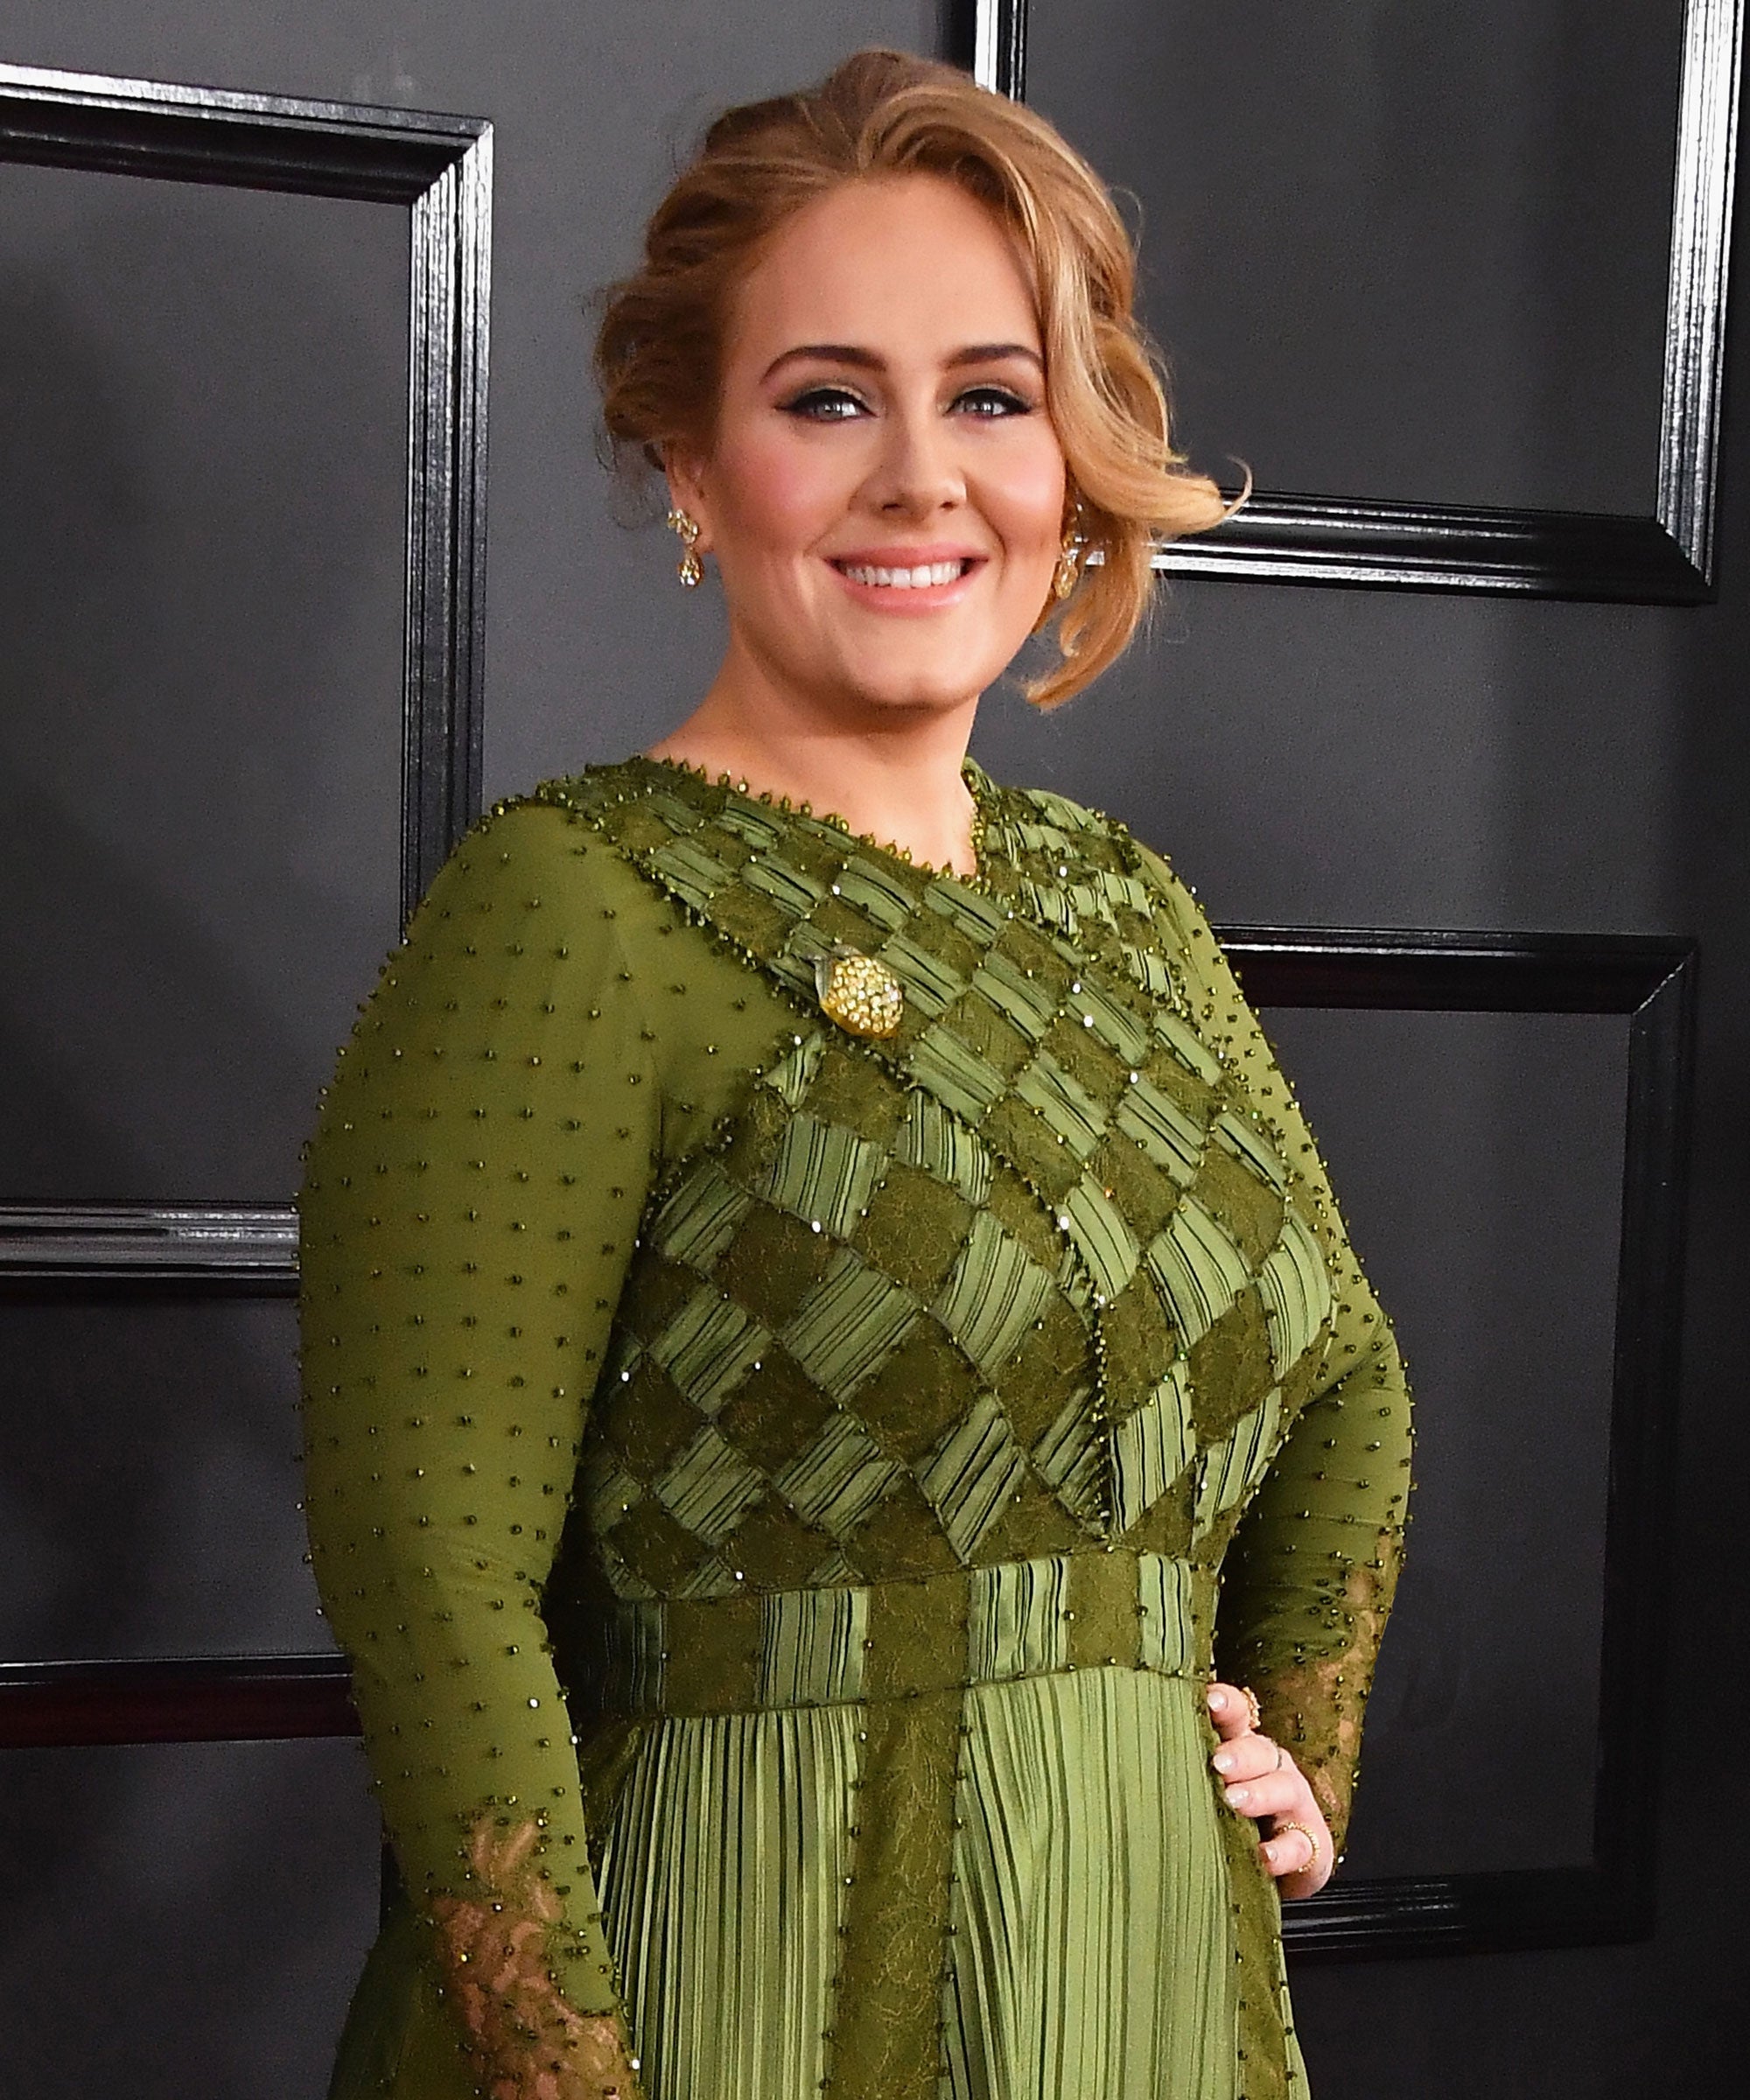 Adele wearing a green dress